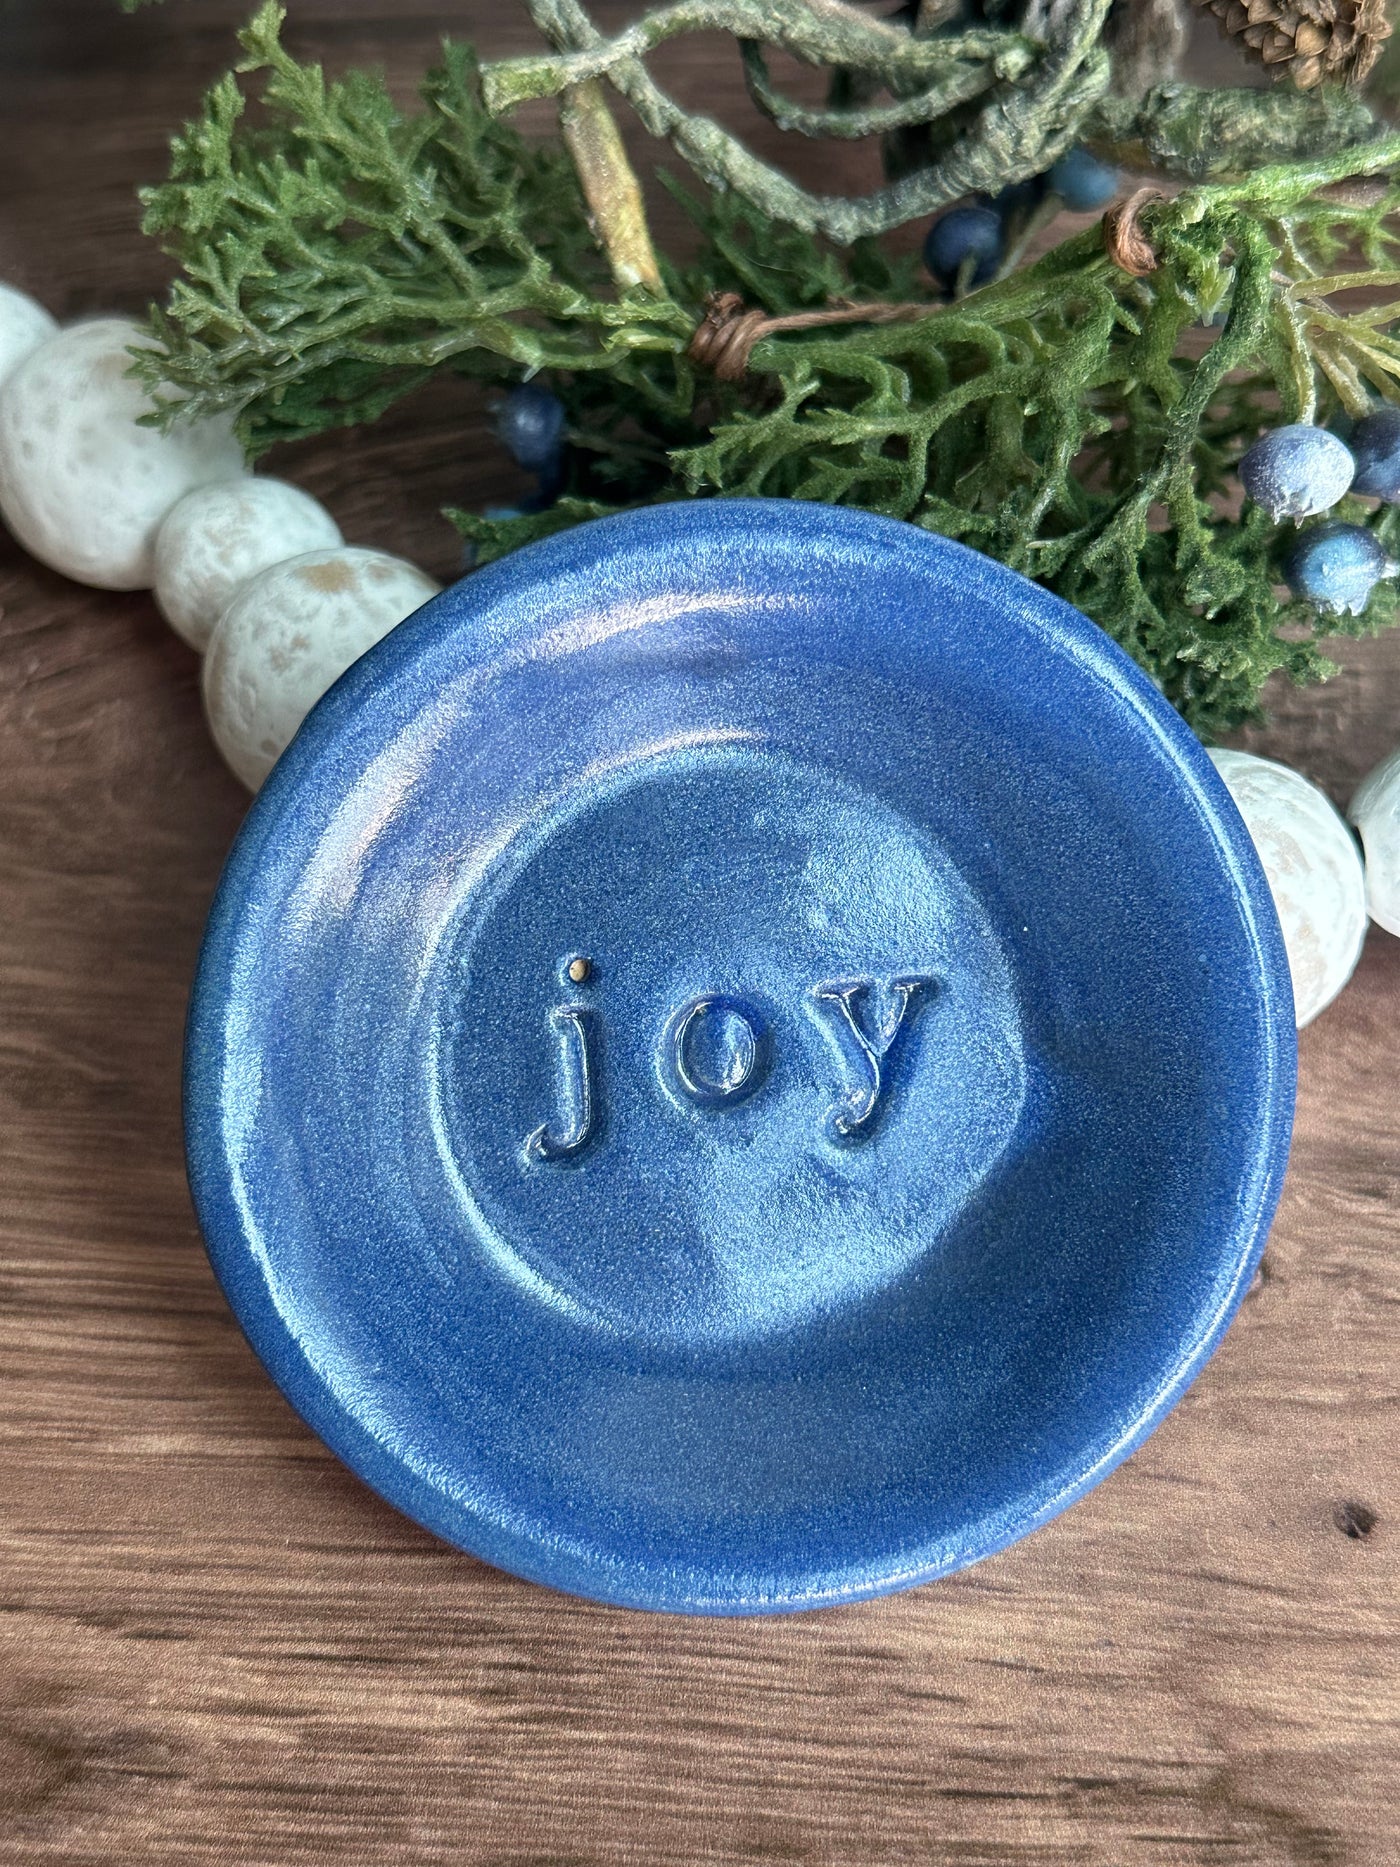 Blue ceramic joy wish dish